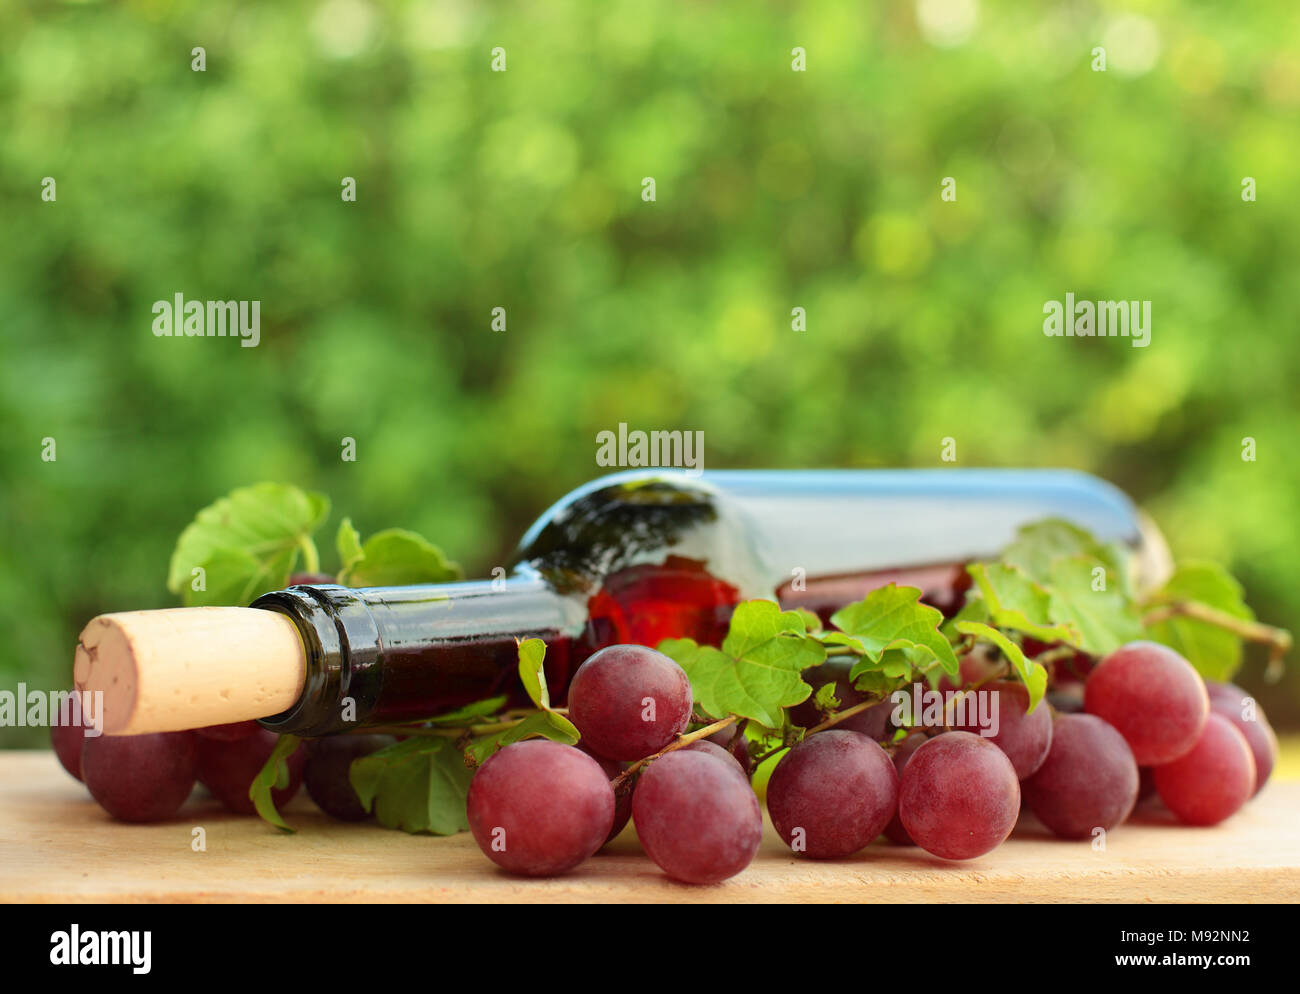 Flasche Wein, rote Traube und grüne Blätter - Hintergrund Stockfoto